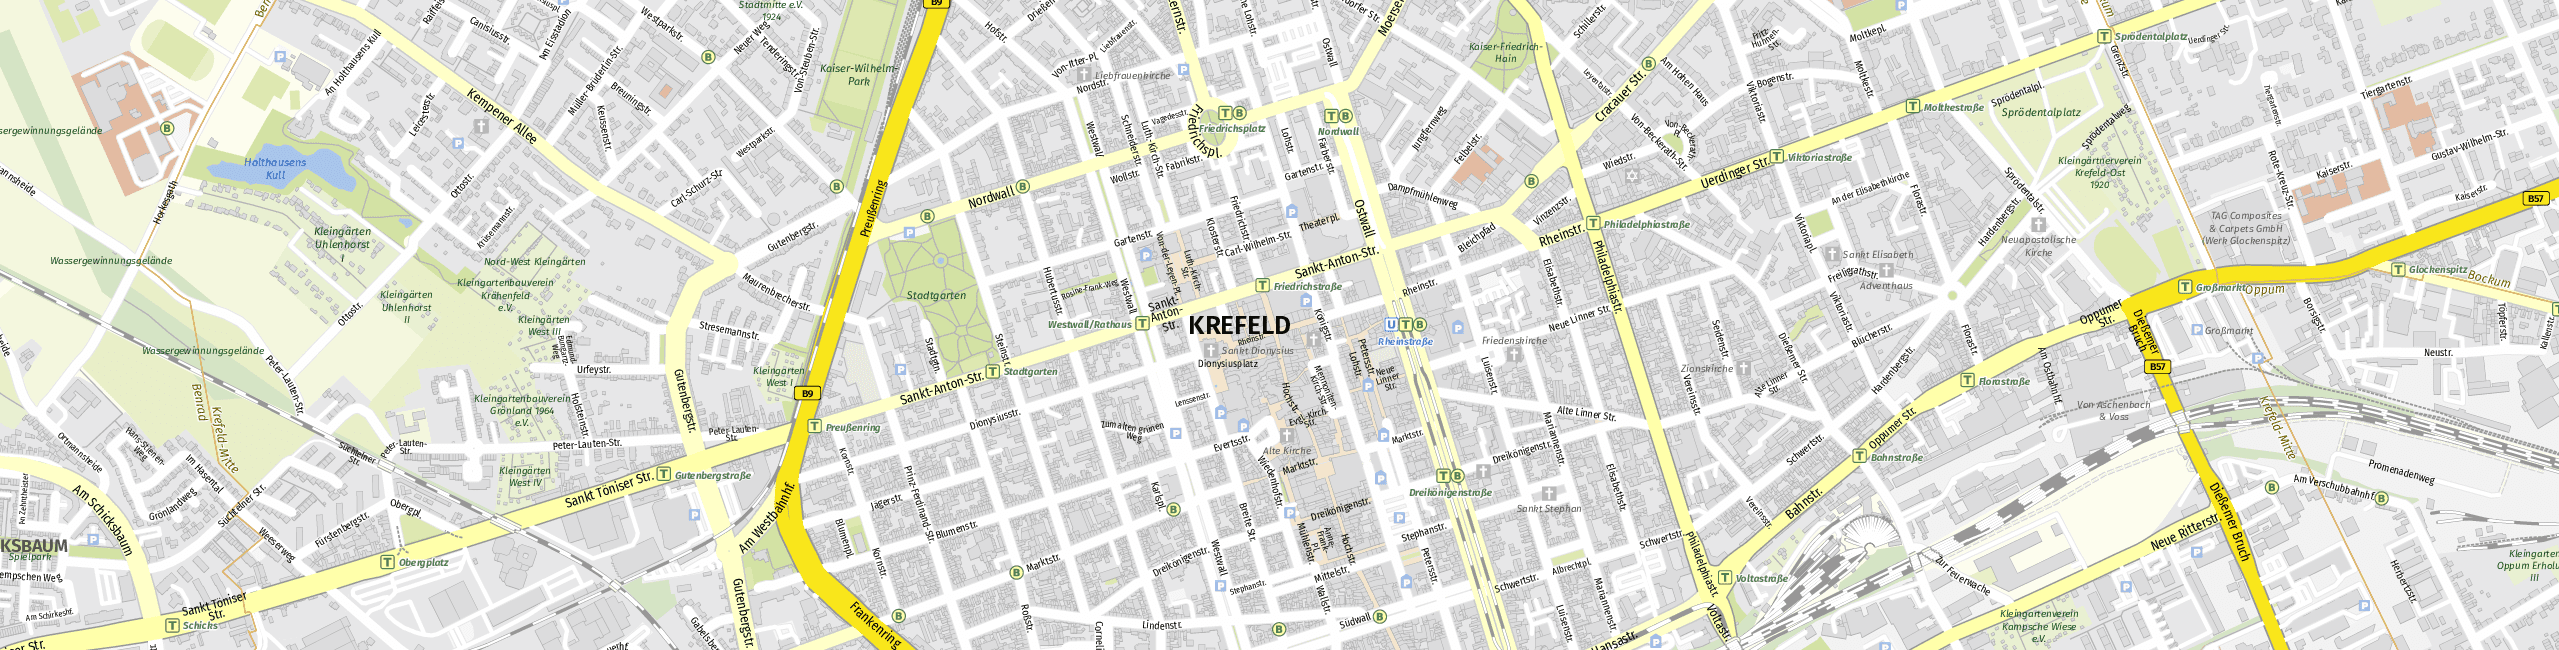 Stadtplan Krefeld zum Downloaden.